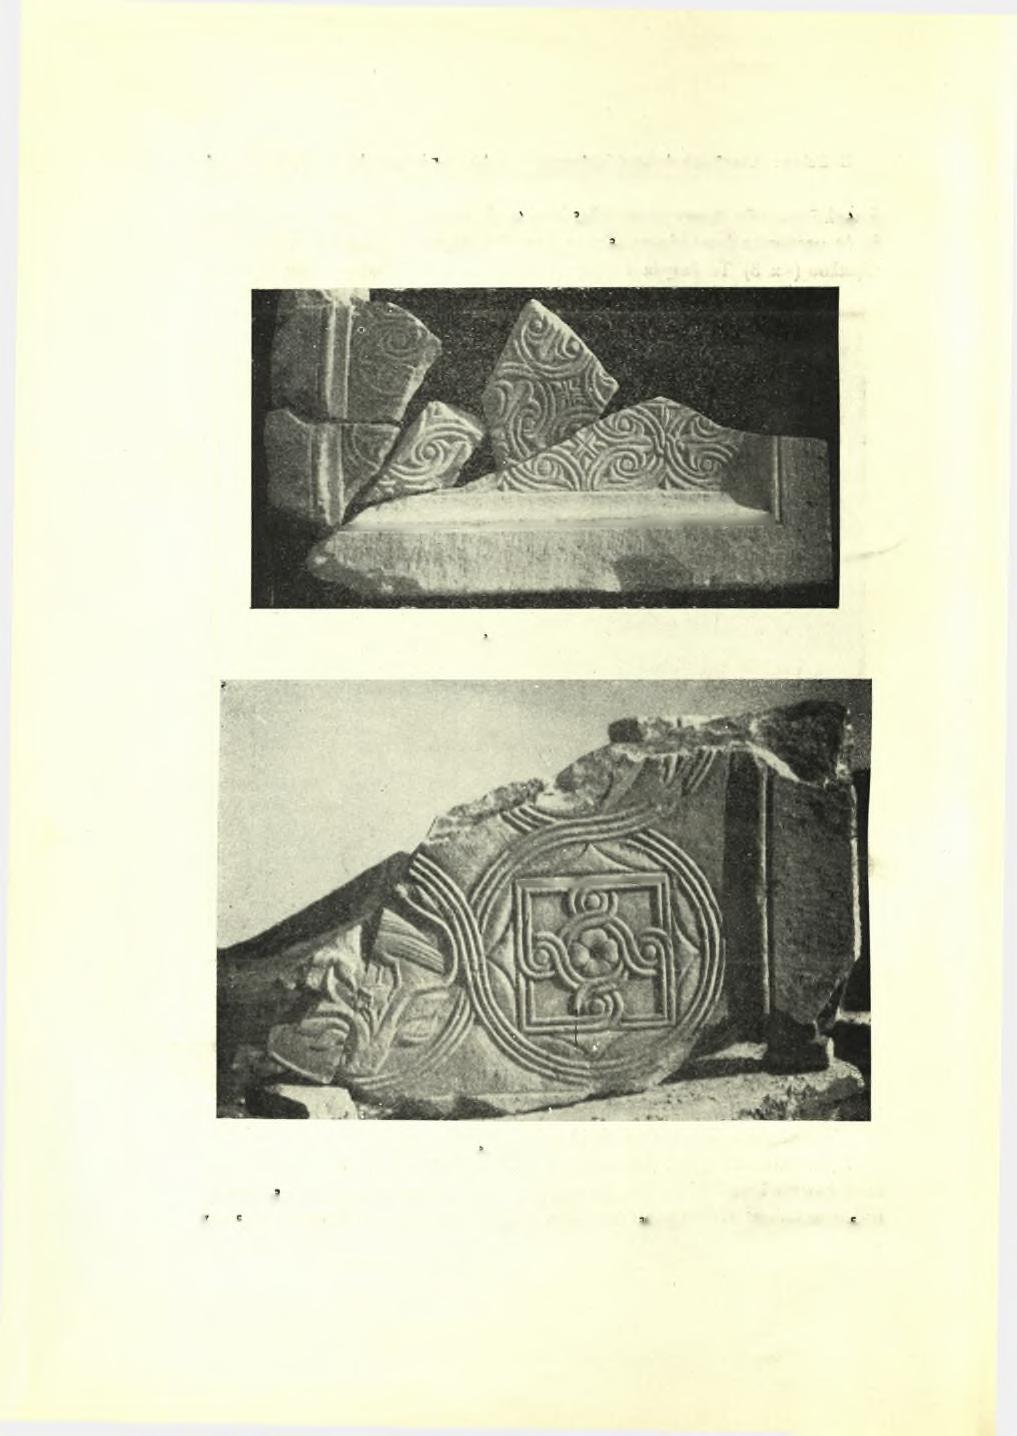 64 Πρακτικάγτής Αρχαιολογικής 'Εταιρείας 1951 βδωτοι, μαρμάρινοι κορμοί, ώς και τά ιωνικά των κιονόκρανα